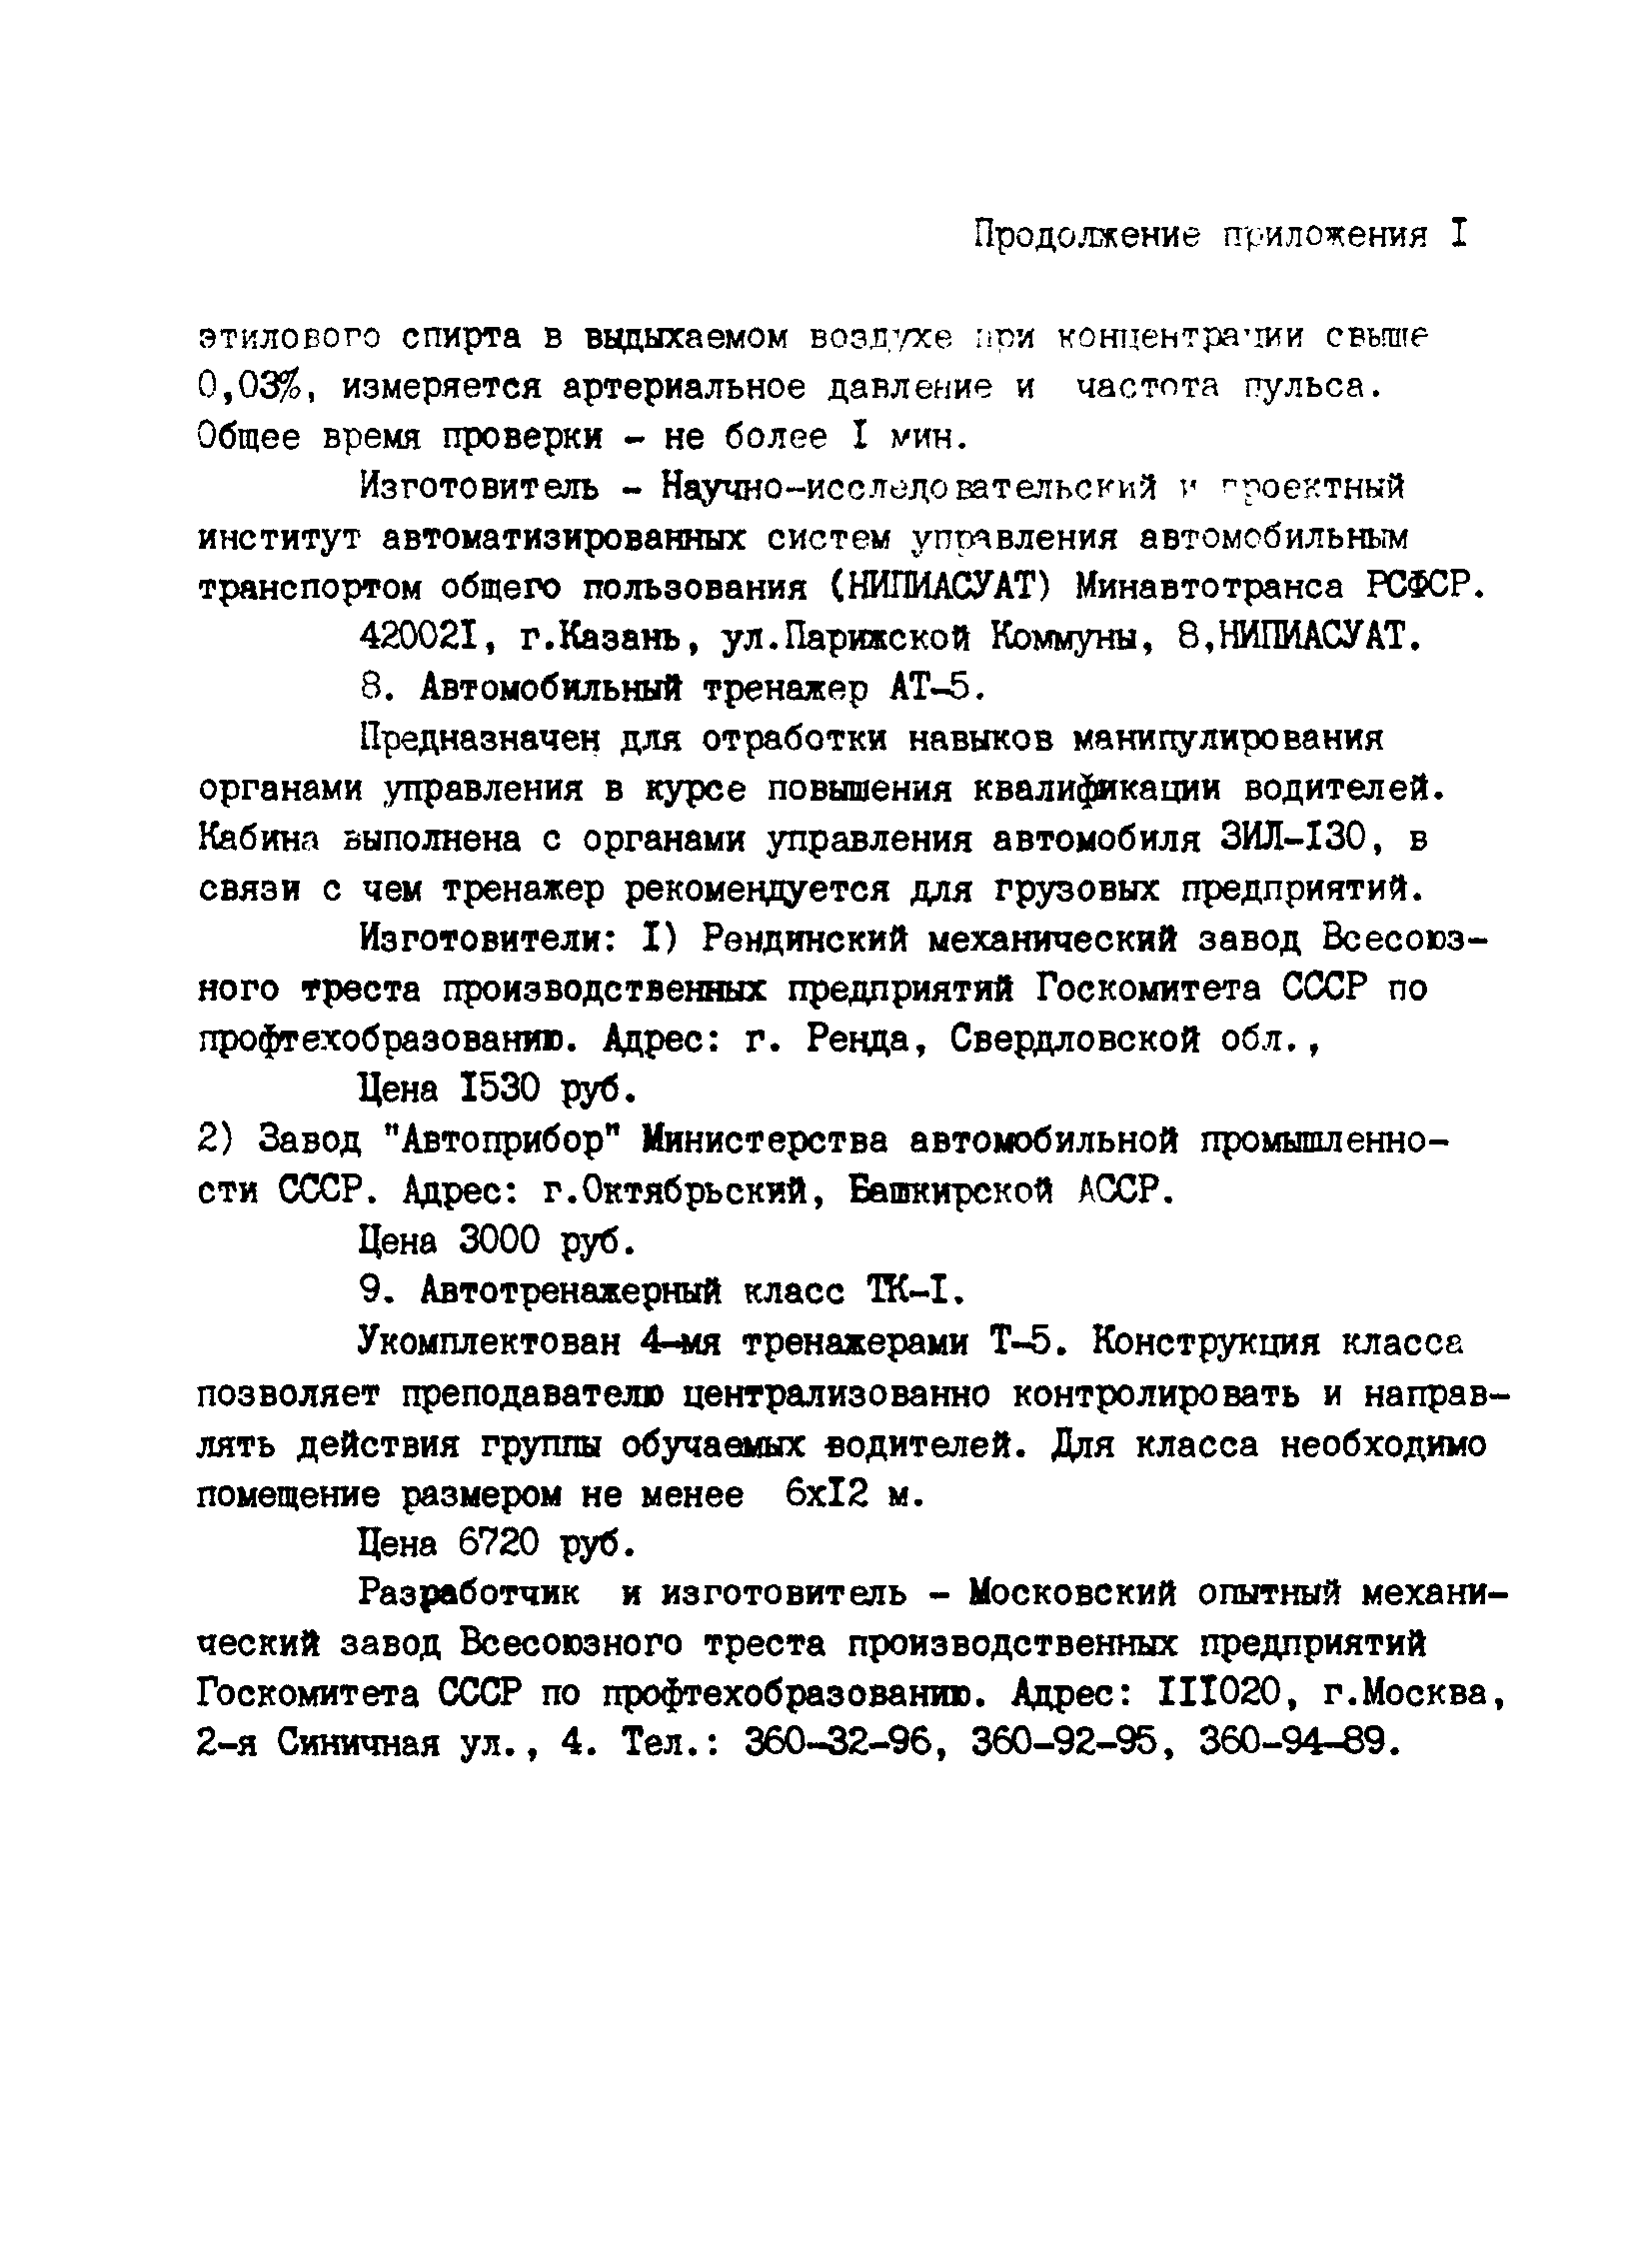 РД 200-РСФСР-12-0071-86-07